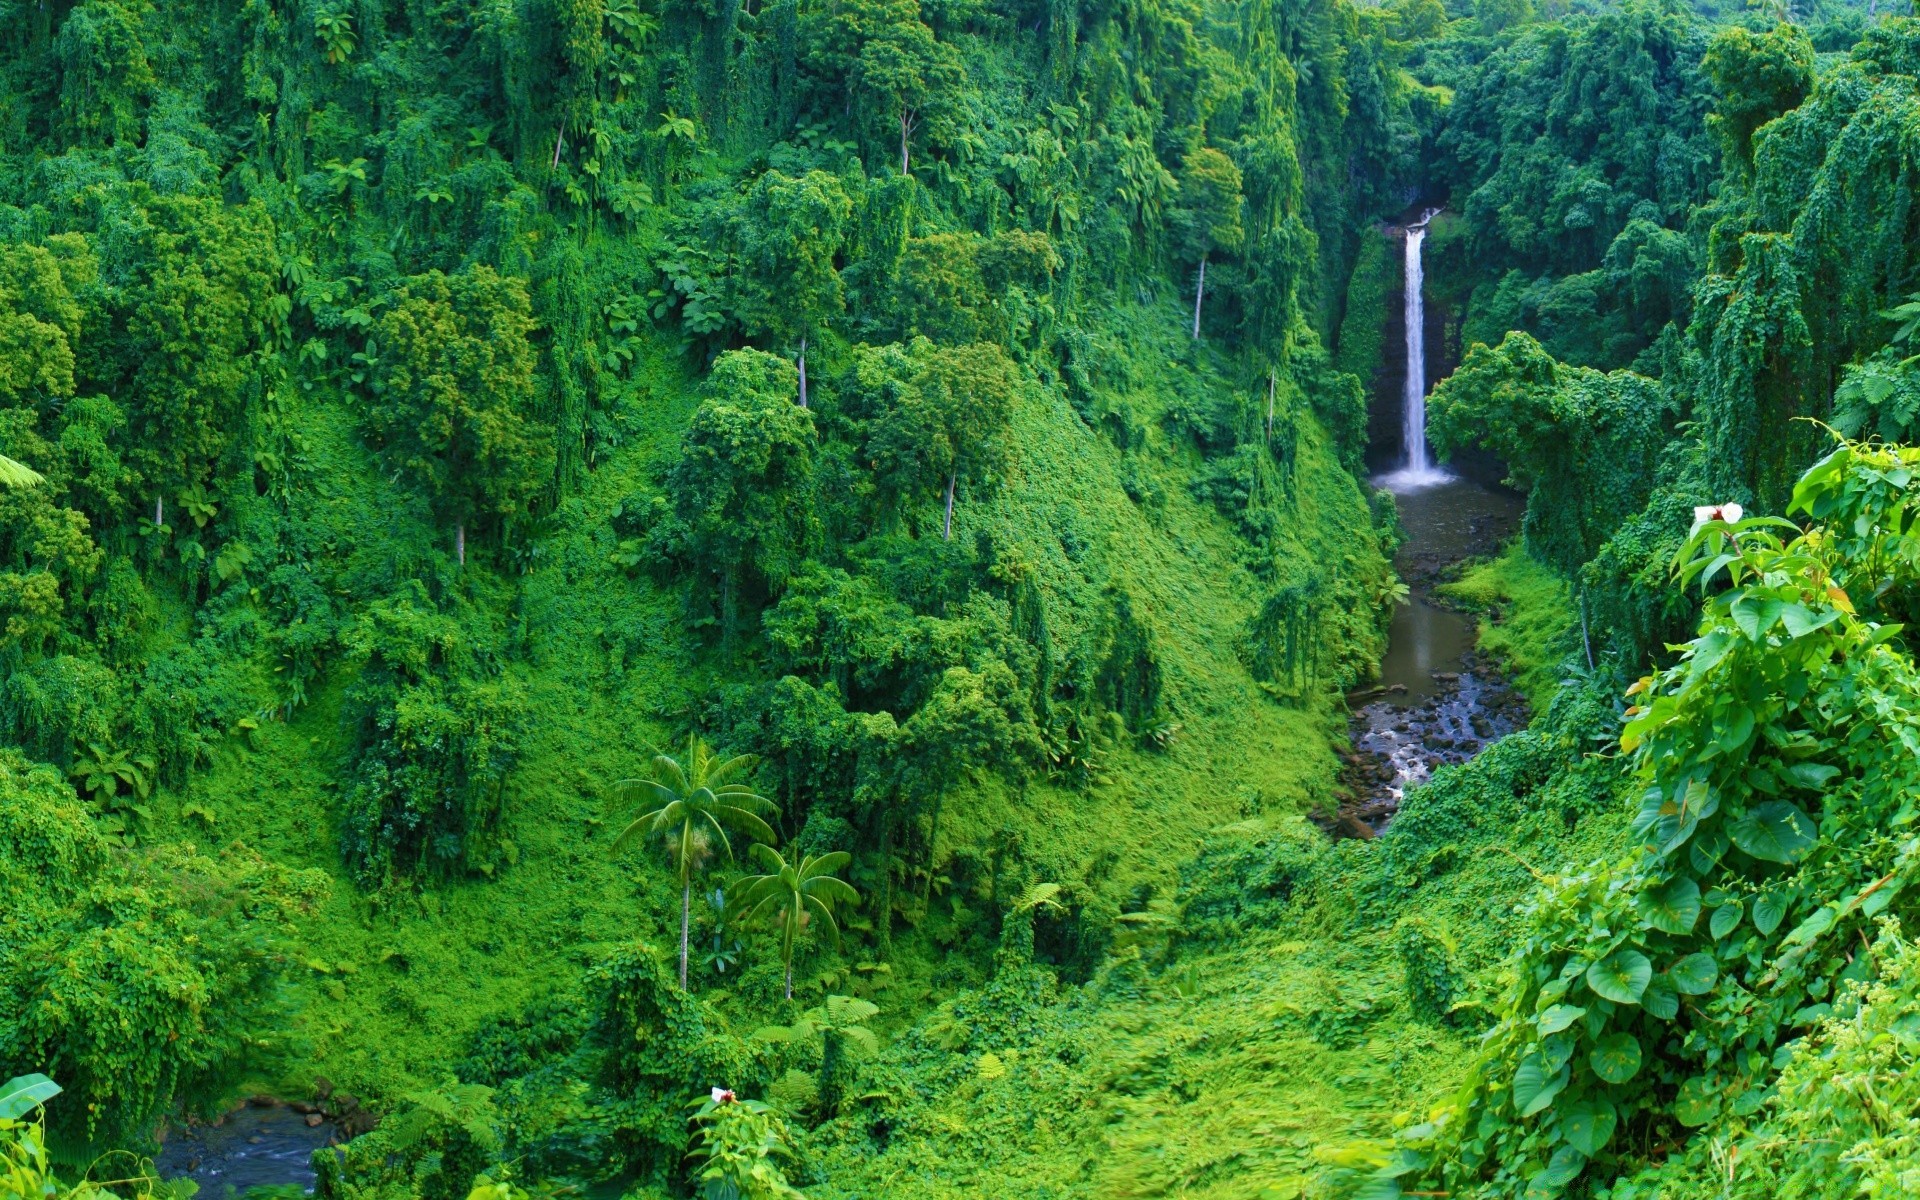 водопады природа древесины лист воды дерево пейзаж флора лето на открытом воздухе пышные живописный путешествия среды река тропический лес горы парк рост